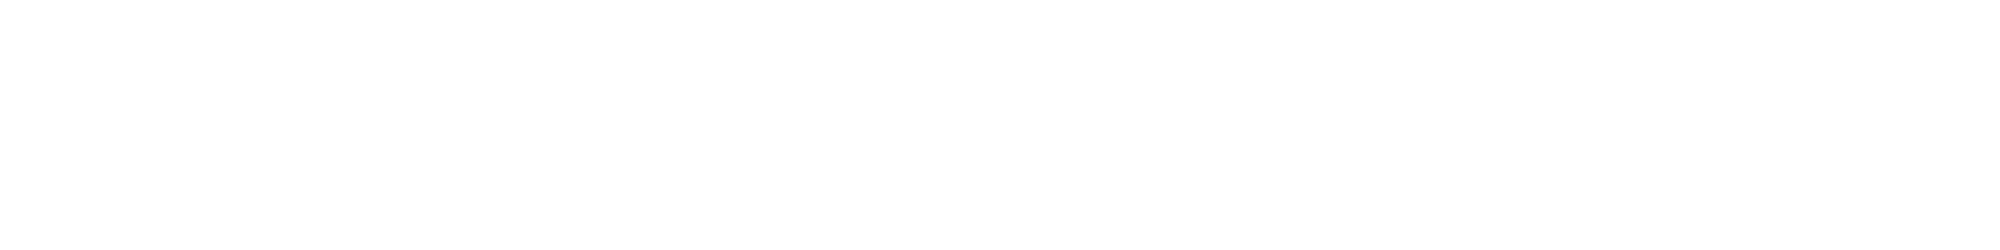 Logo HACK Erlebniswelt